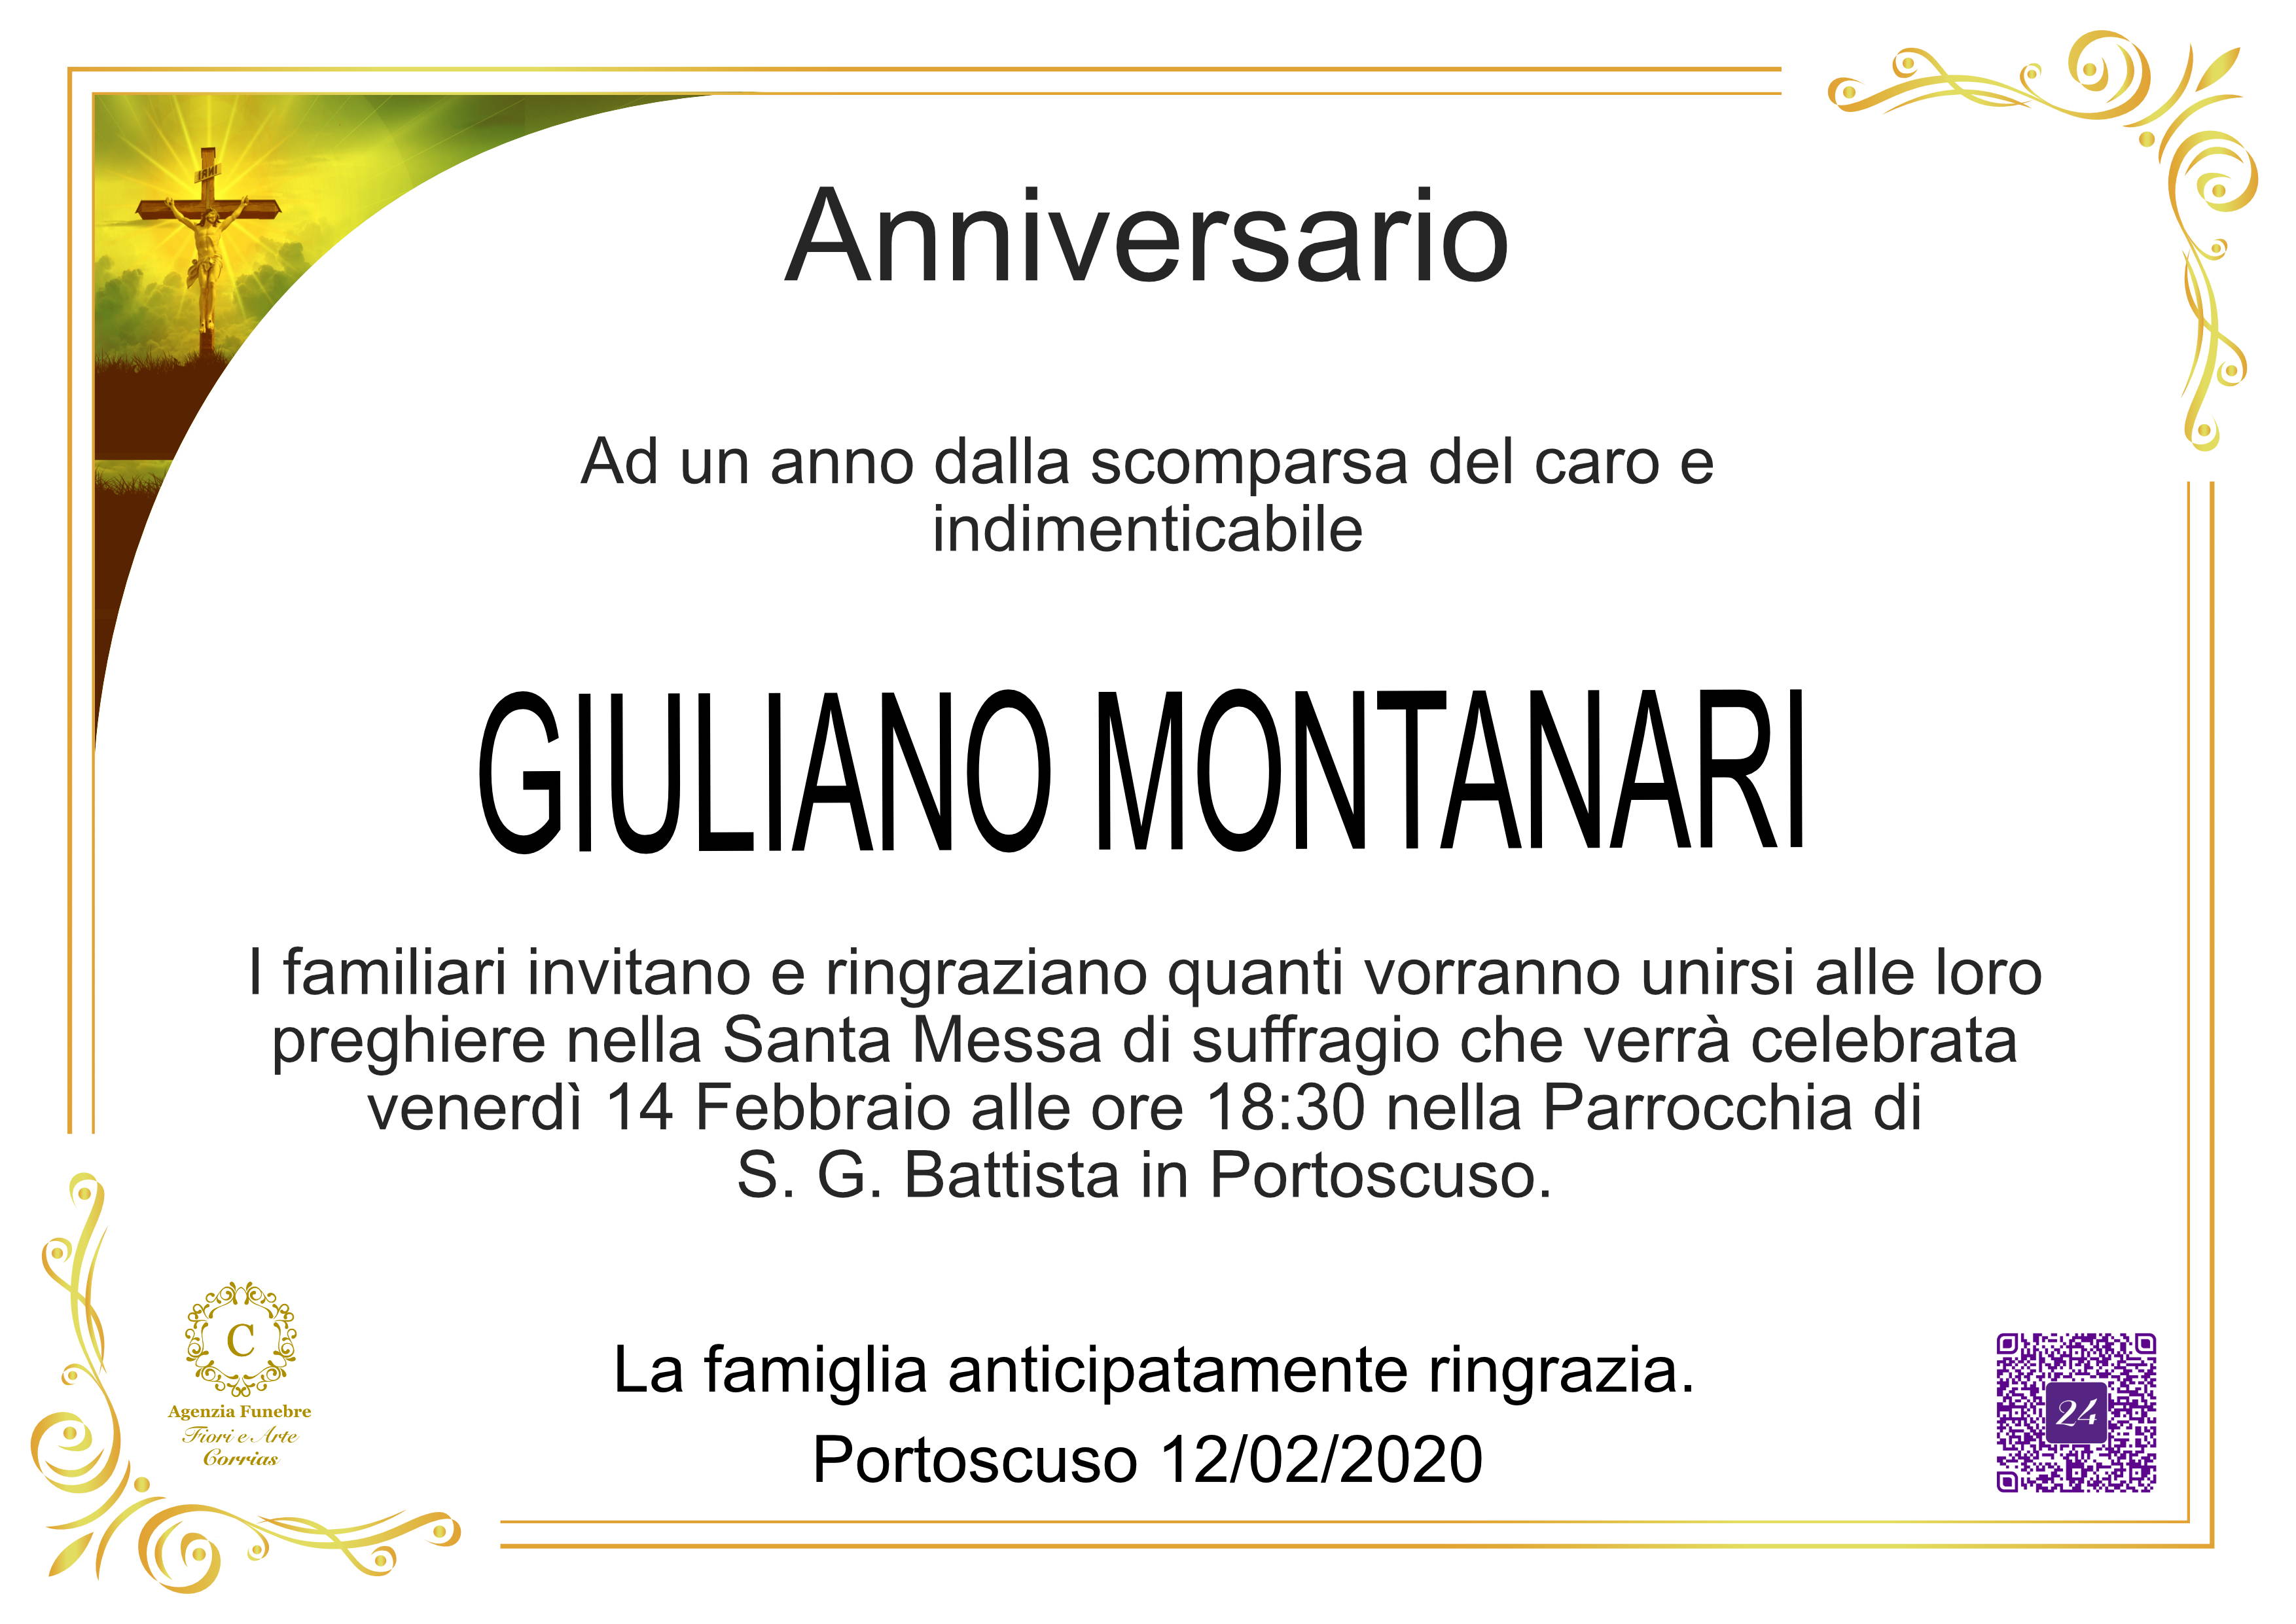 Giuliano Montanari